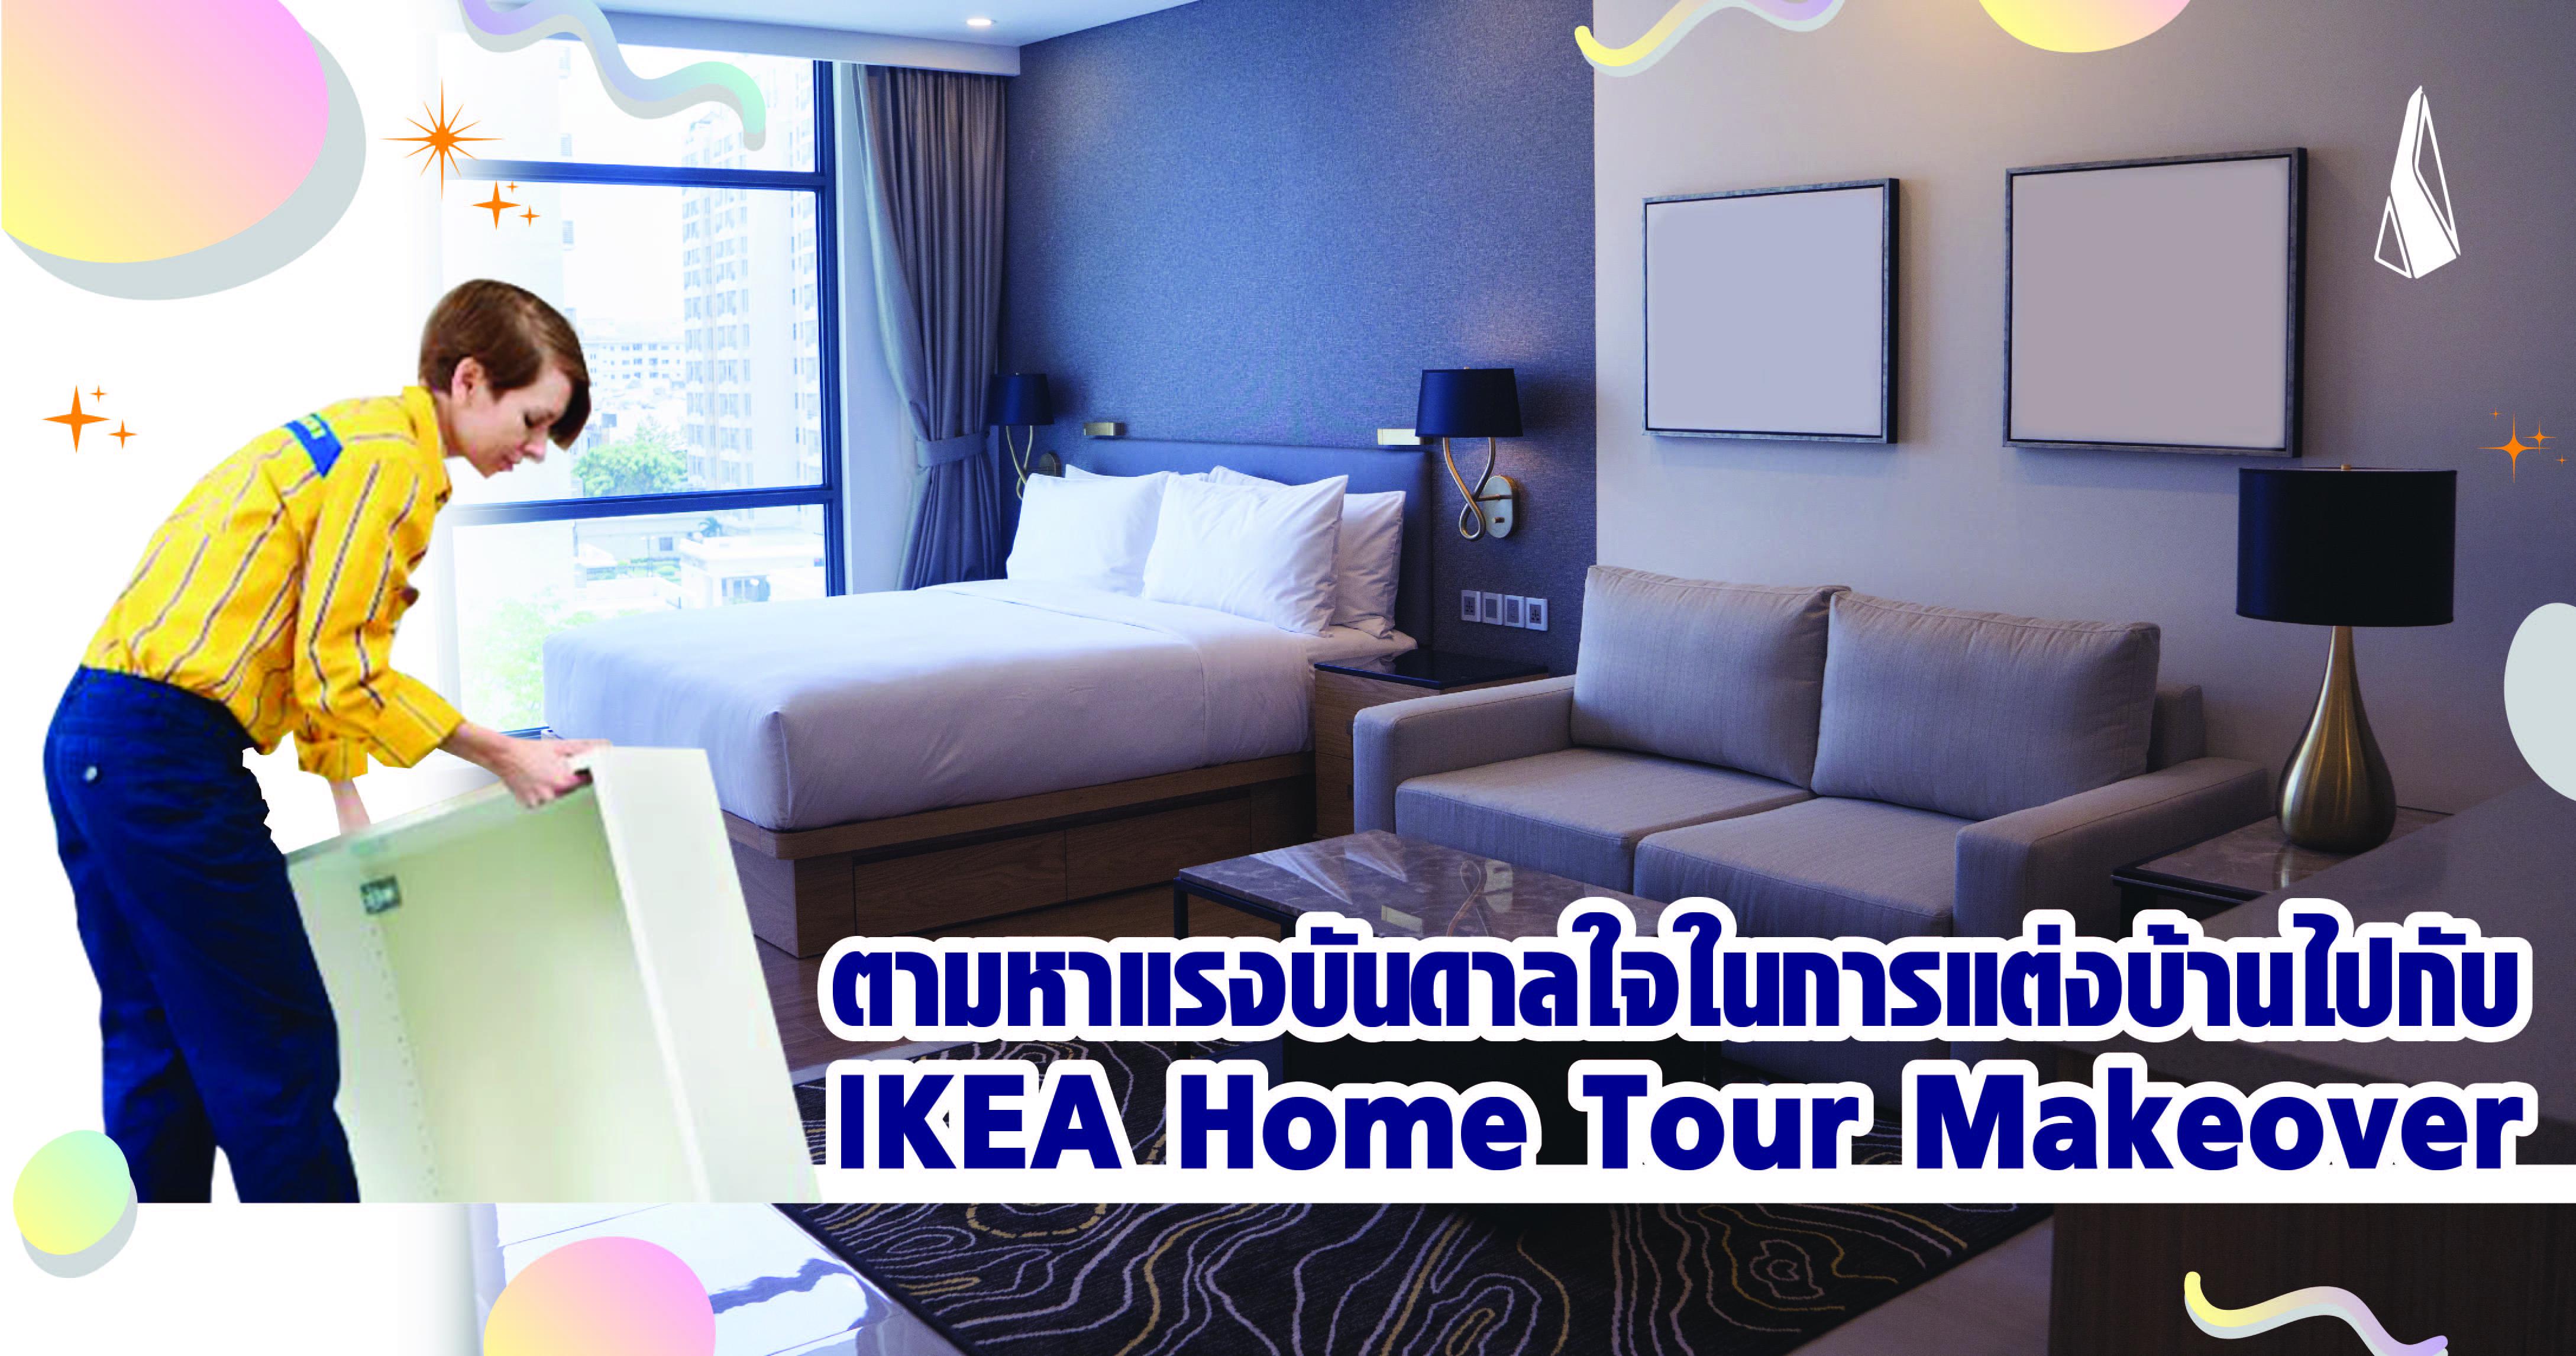 รูปบทความ ตามหาแรงบันดาลใจในการแต่งบ้านไปกับ IKEA Home Tour Makeover